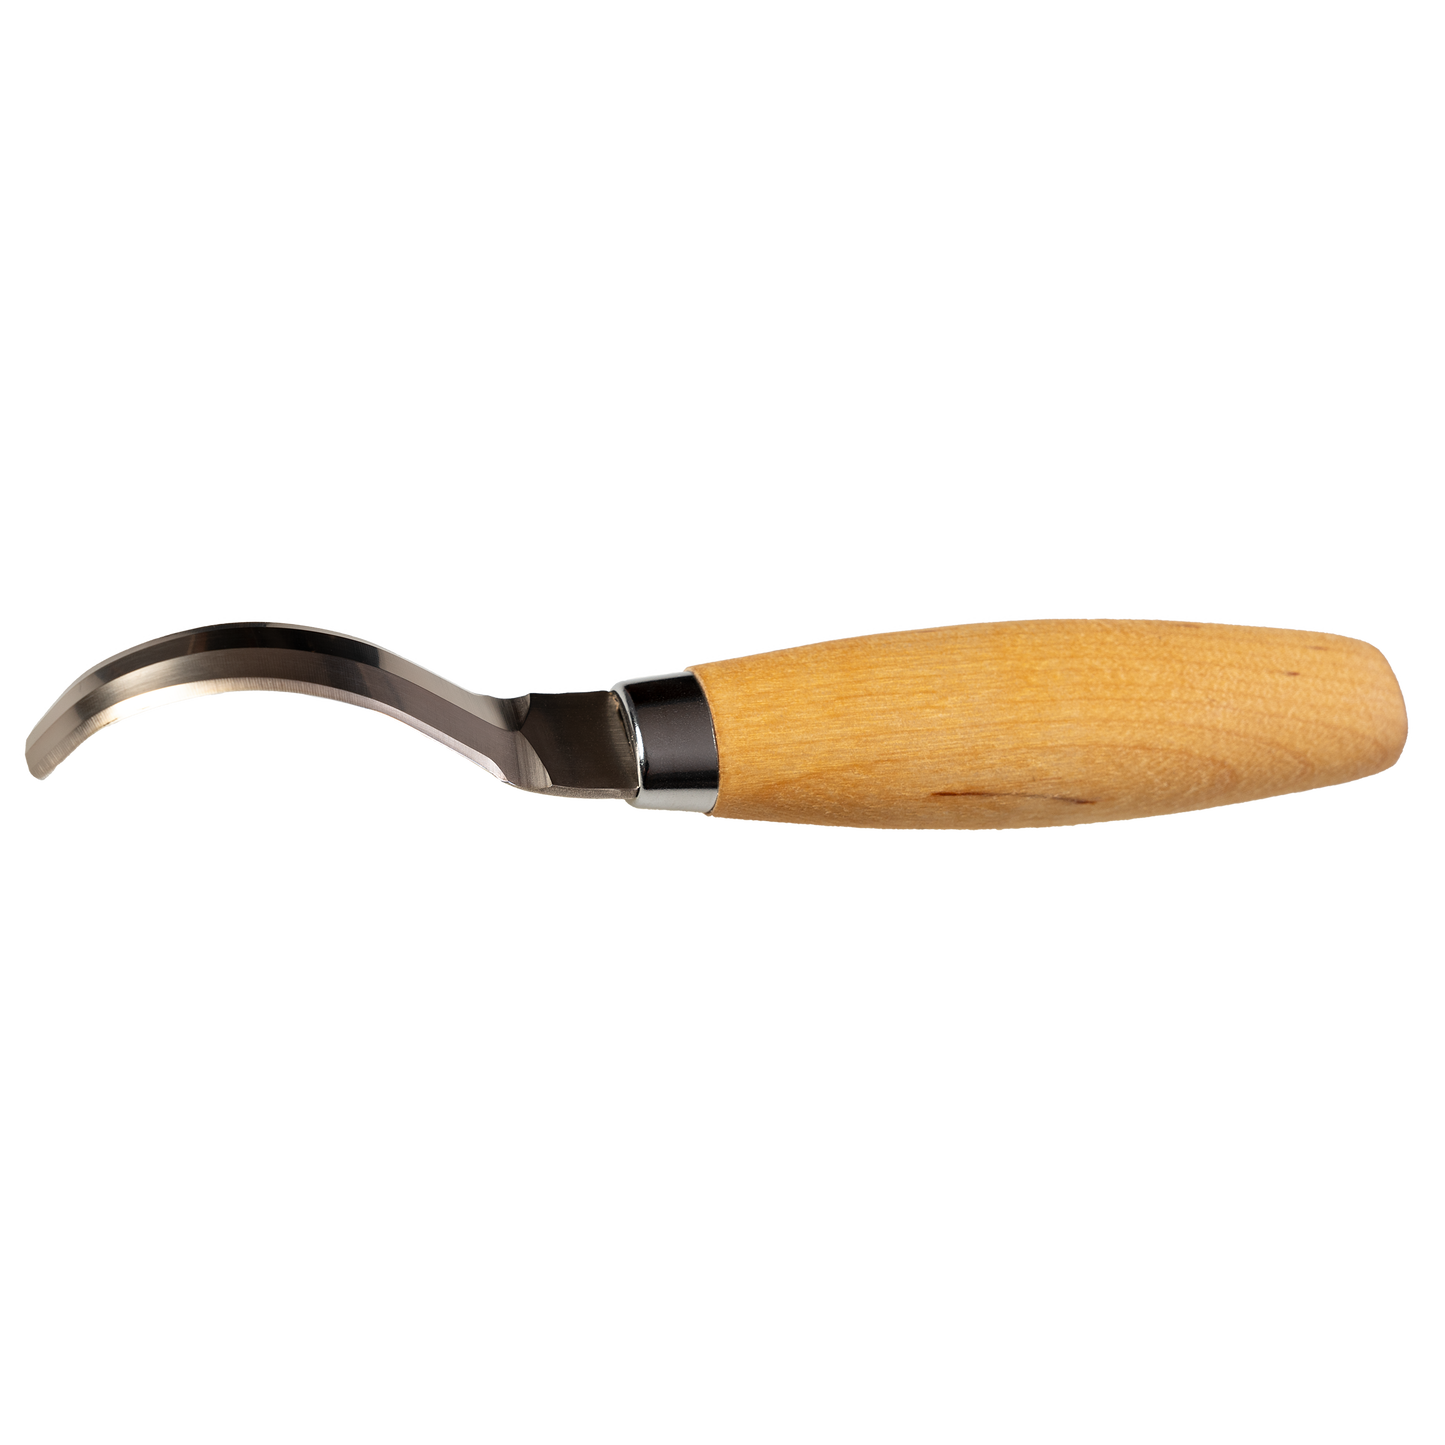 Morakniv Wood Carving Craft Knife